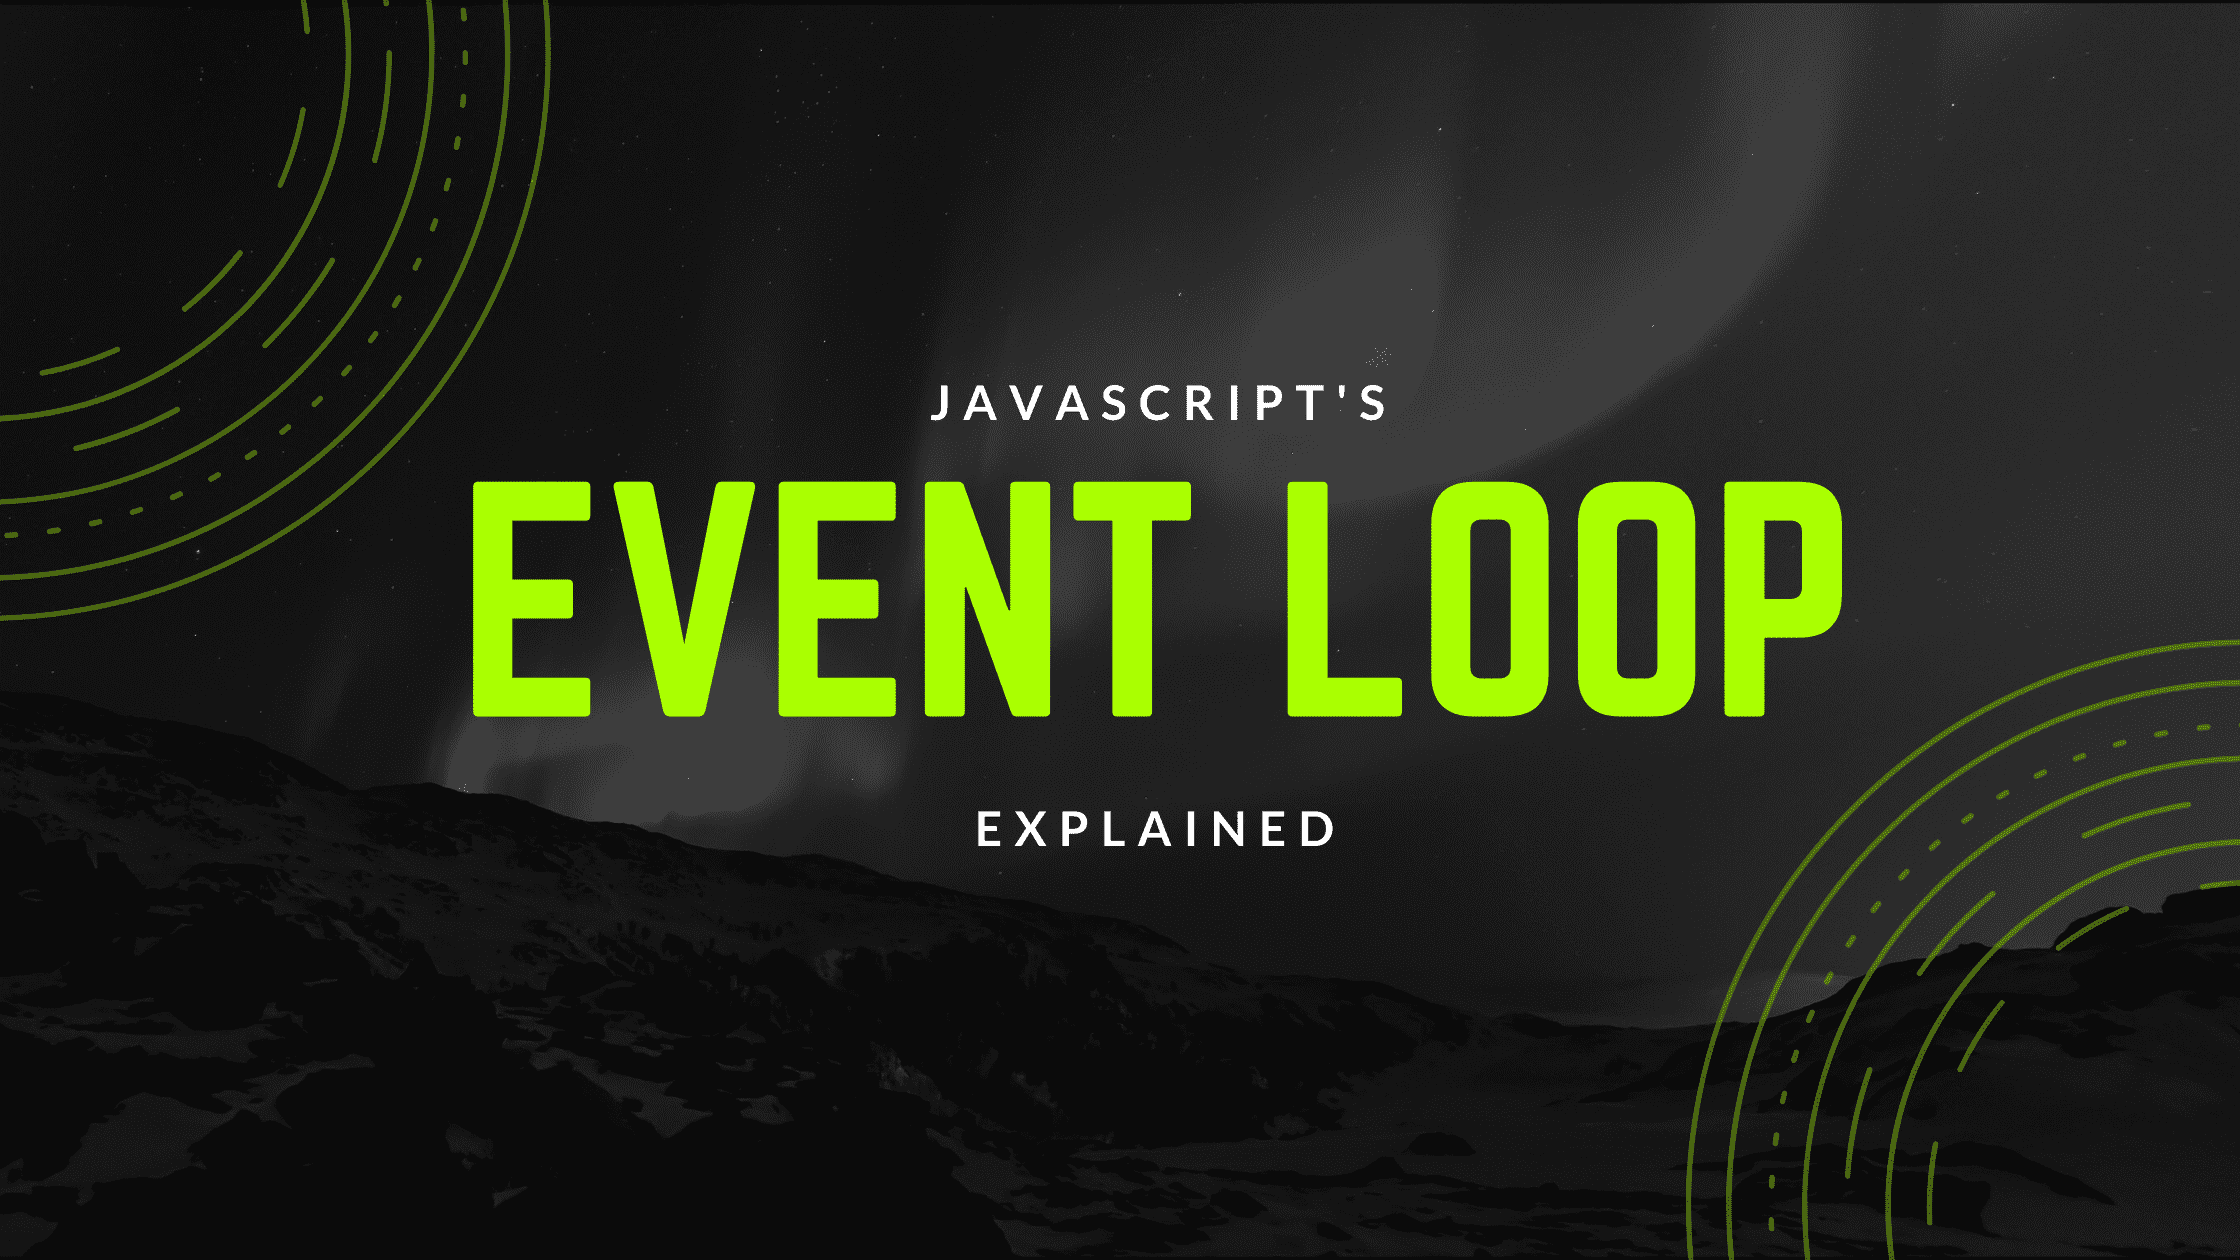 Js events. Event loop js. Event loop картинка. Event loop.